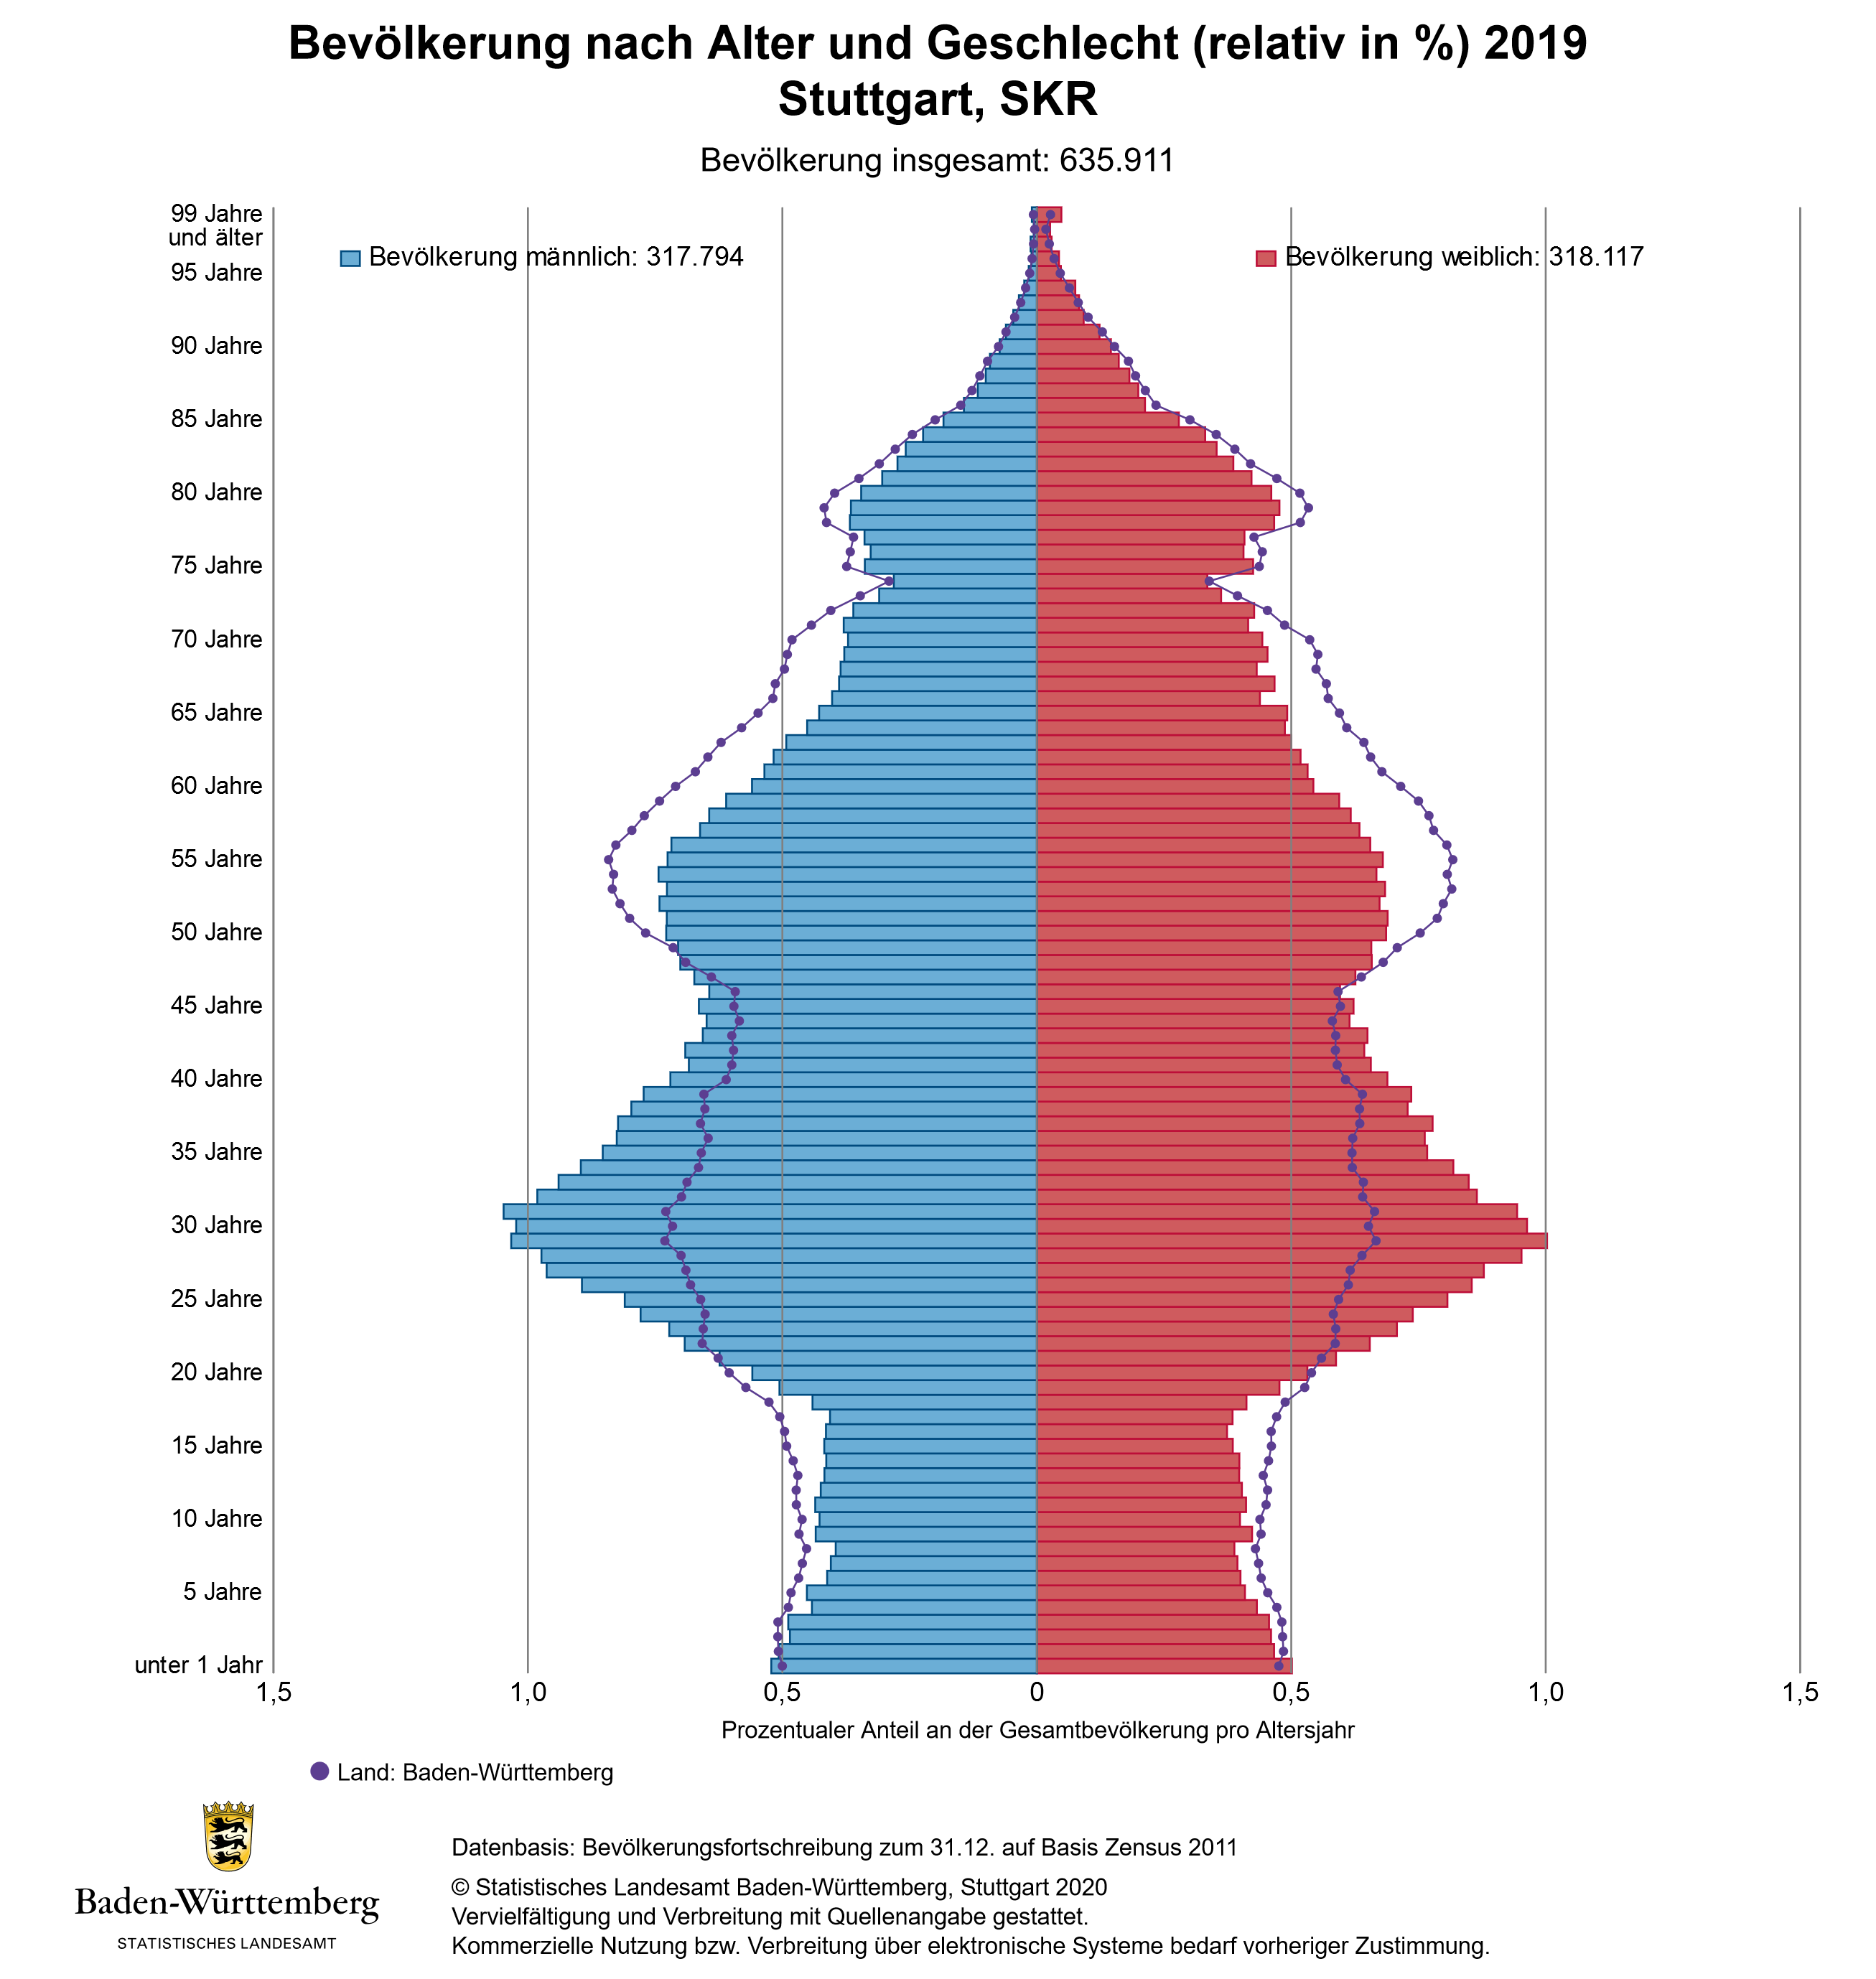 Schaubild 1: Bevölkerungspyramide des Stadtkreises Stuttgart im Vergleich zur Bevölkerungspyramide des Landes Baden-Württembergs (lila Linie) im Jahr 2019